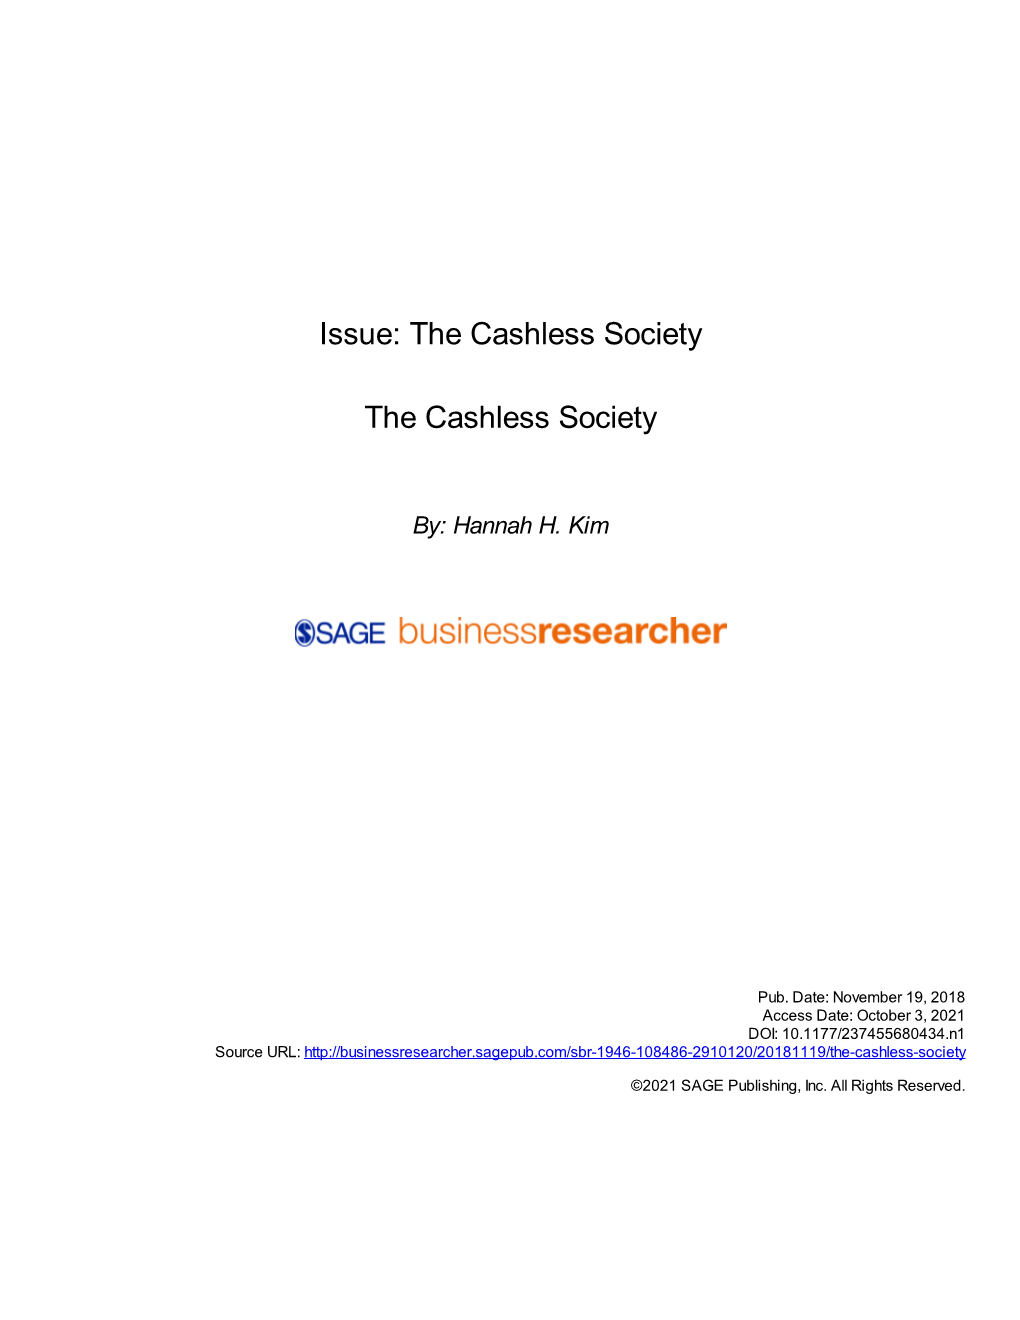 The Cashless Society the Cashless Society